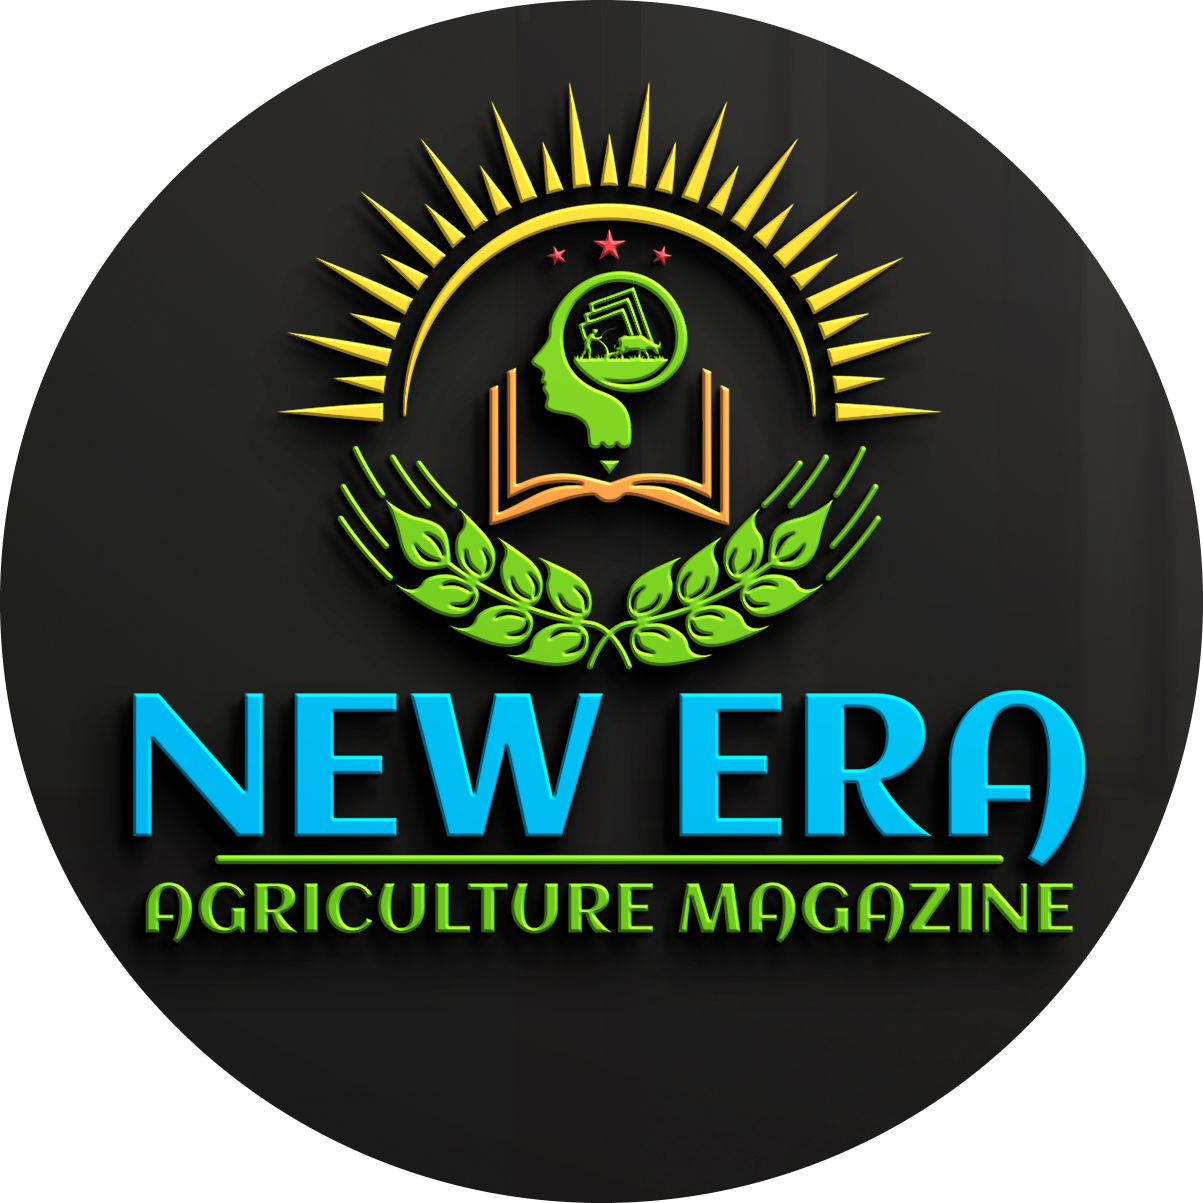 New Era Agriculture magazine